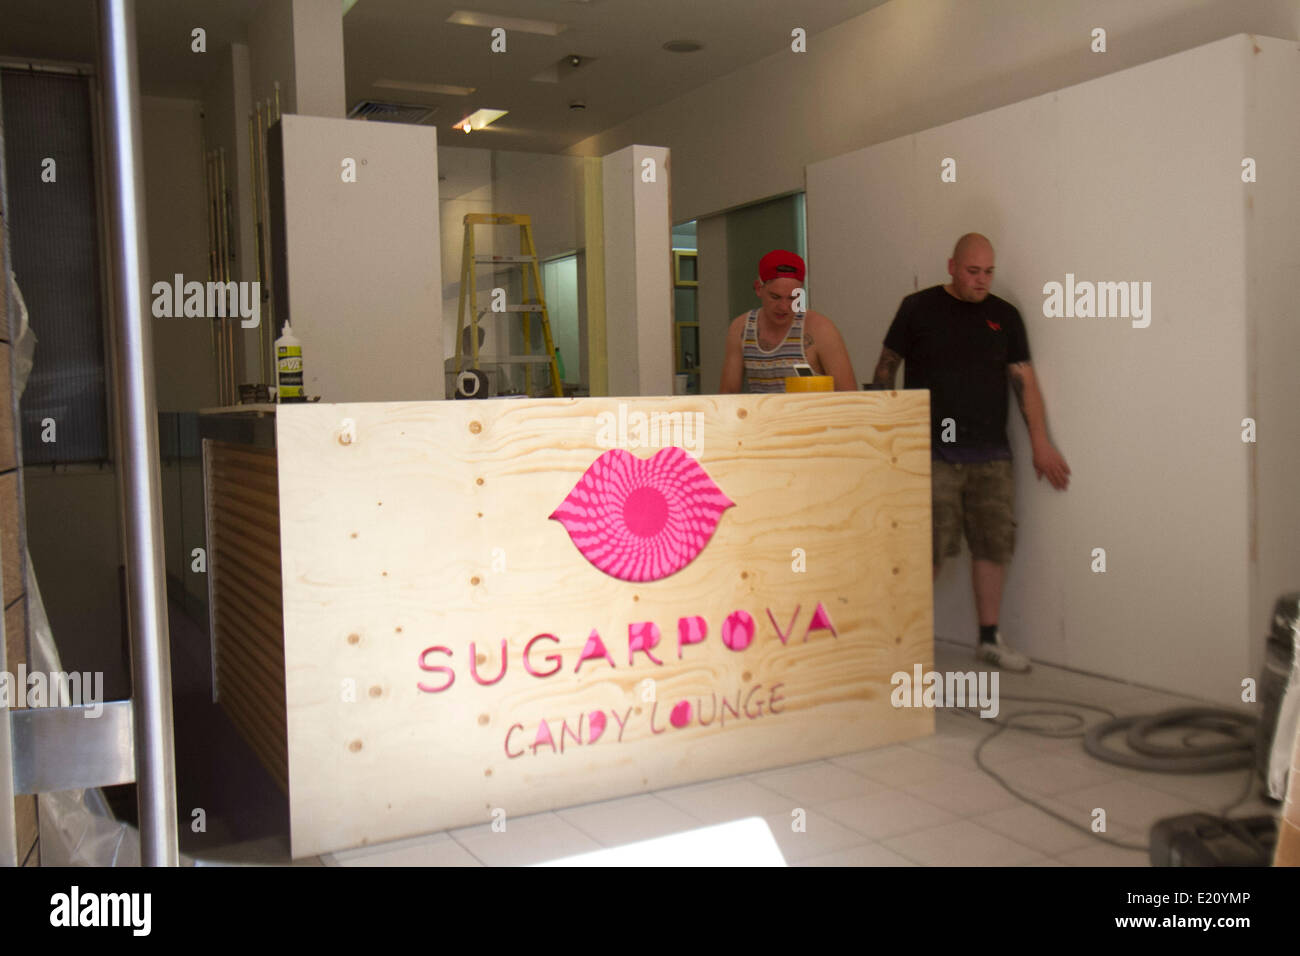 Wimbledon London UK. 12 juin 2014. Les travailleurs de mettre la touche finale au nouveau magasin de bonbons de Maria Sharapova nommée 'Sugarpova» avant l'ouverture de droits : amer ghazzal/Alamy Live News Banque D'Images